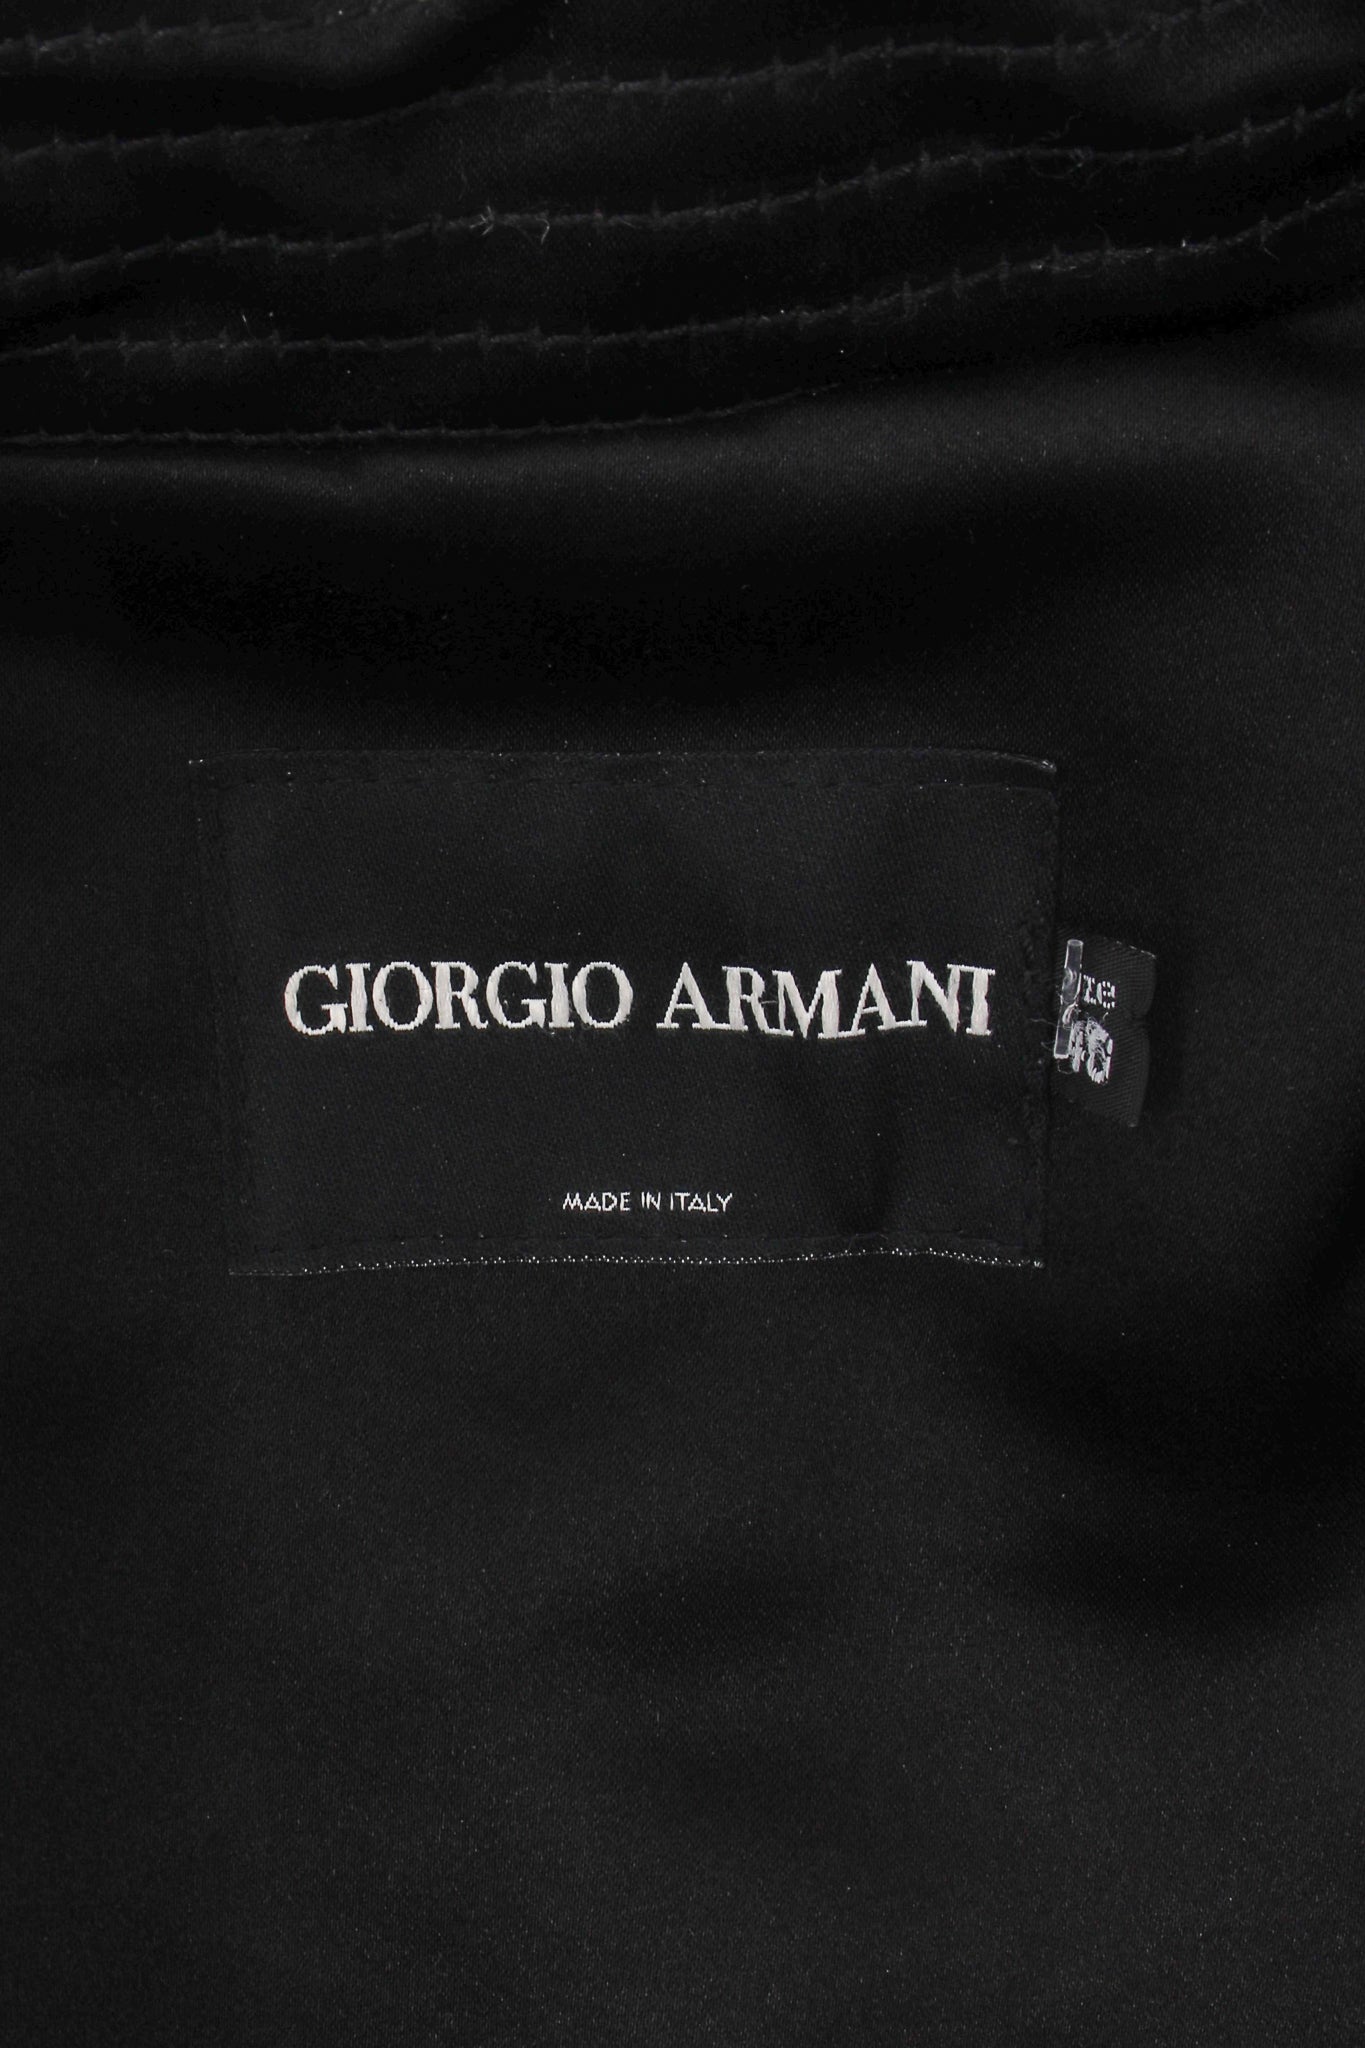 Vintage Giorgio Armani Floral Fur Jacket label at Recess Los Angeles